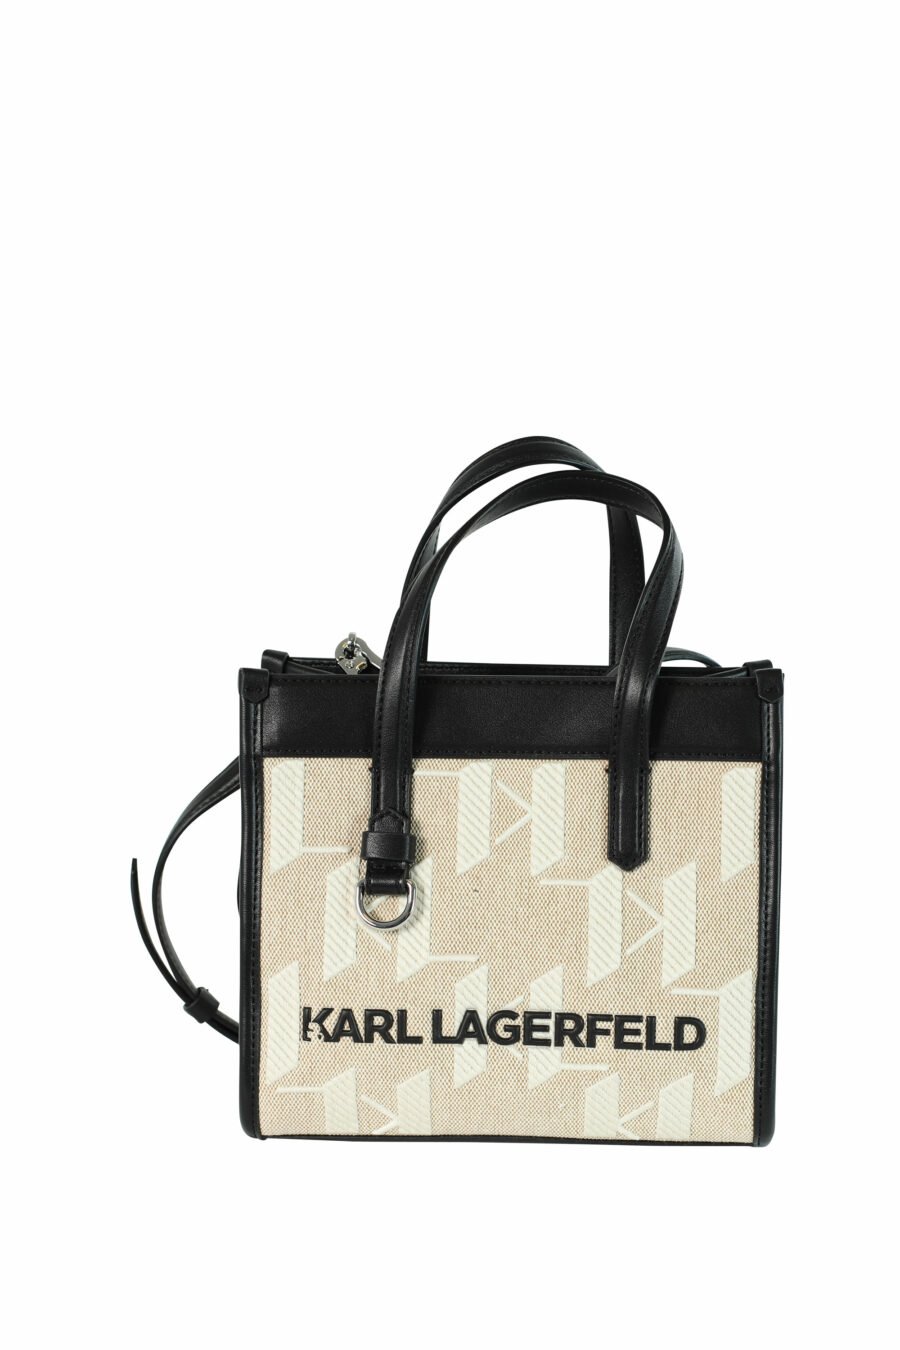 Tote bag mini beige con monograma blanco y detalles negros - 8720092900058